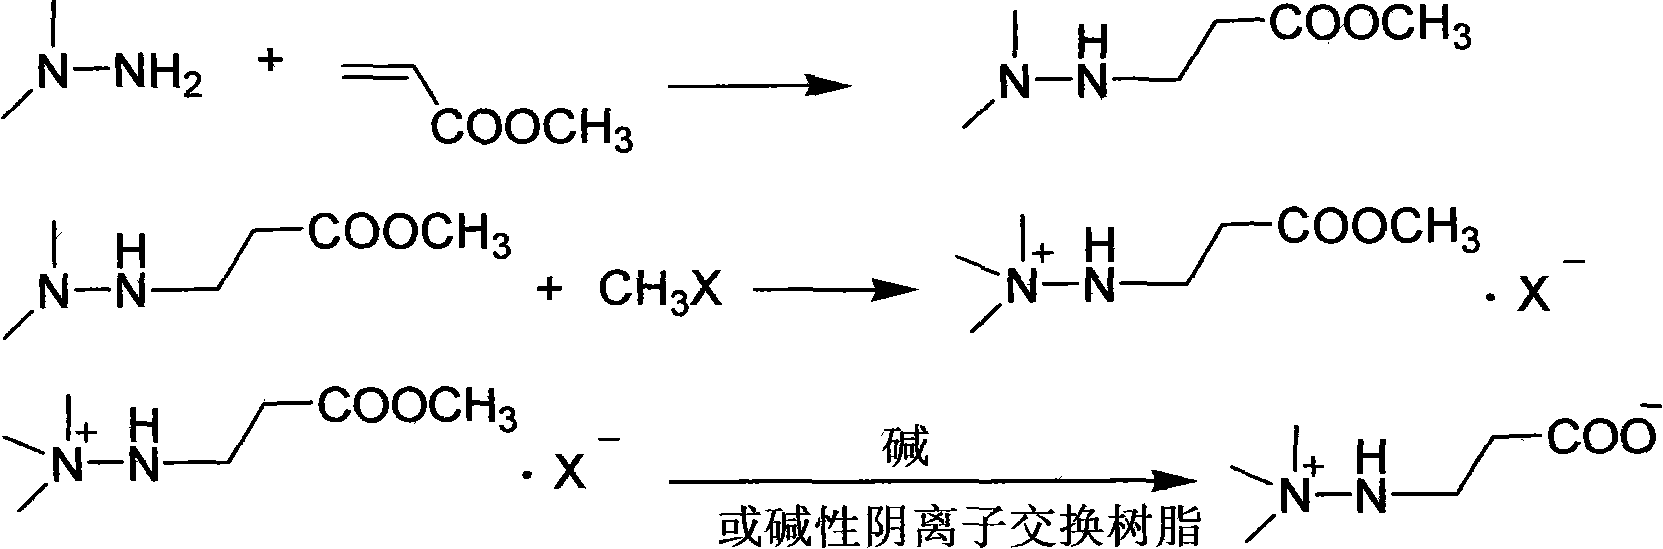 Preparation method of mildronate